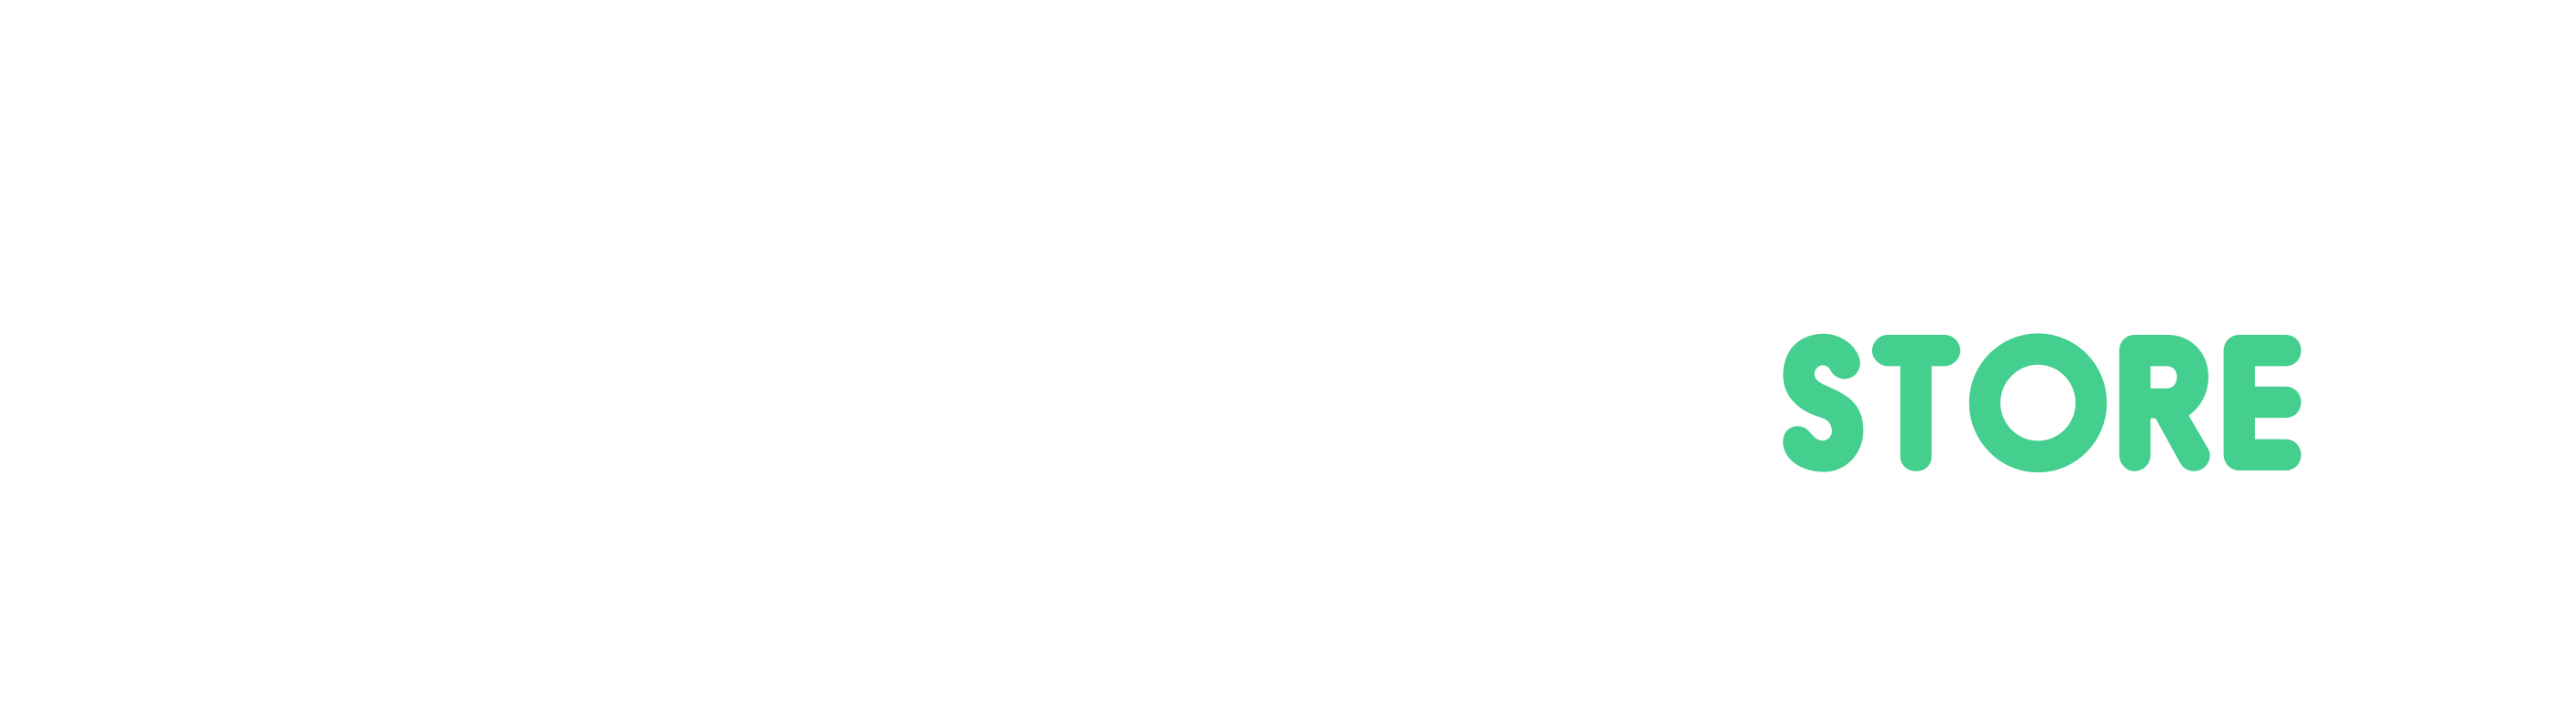 Watson Store